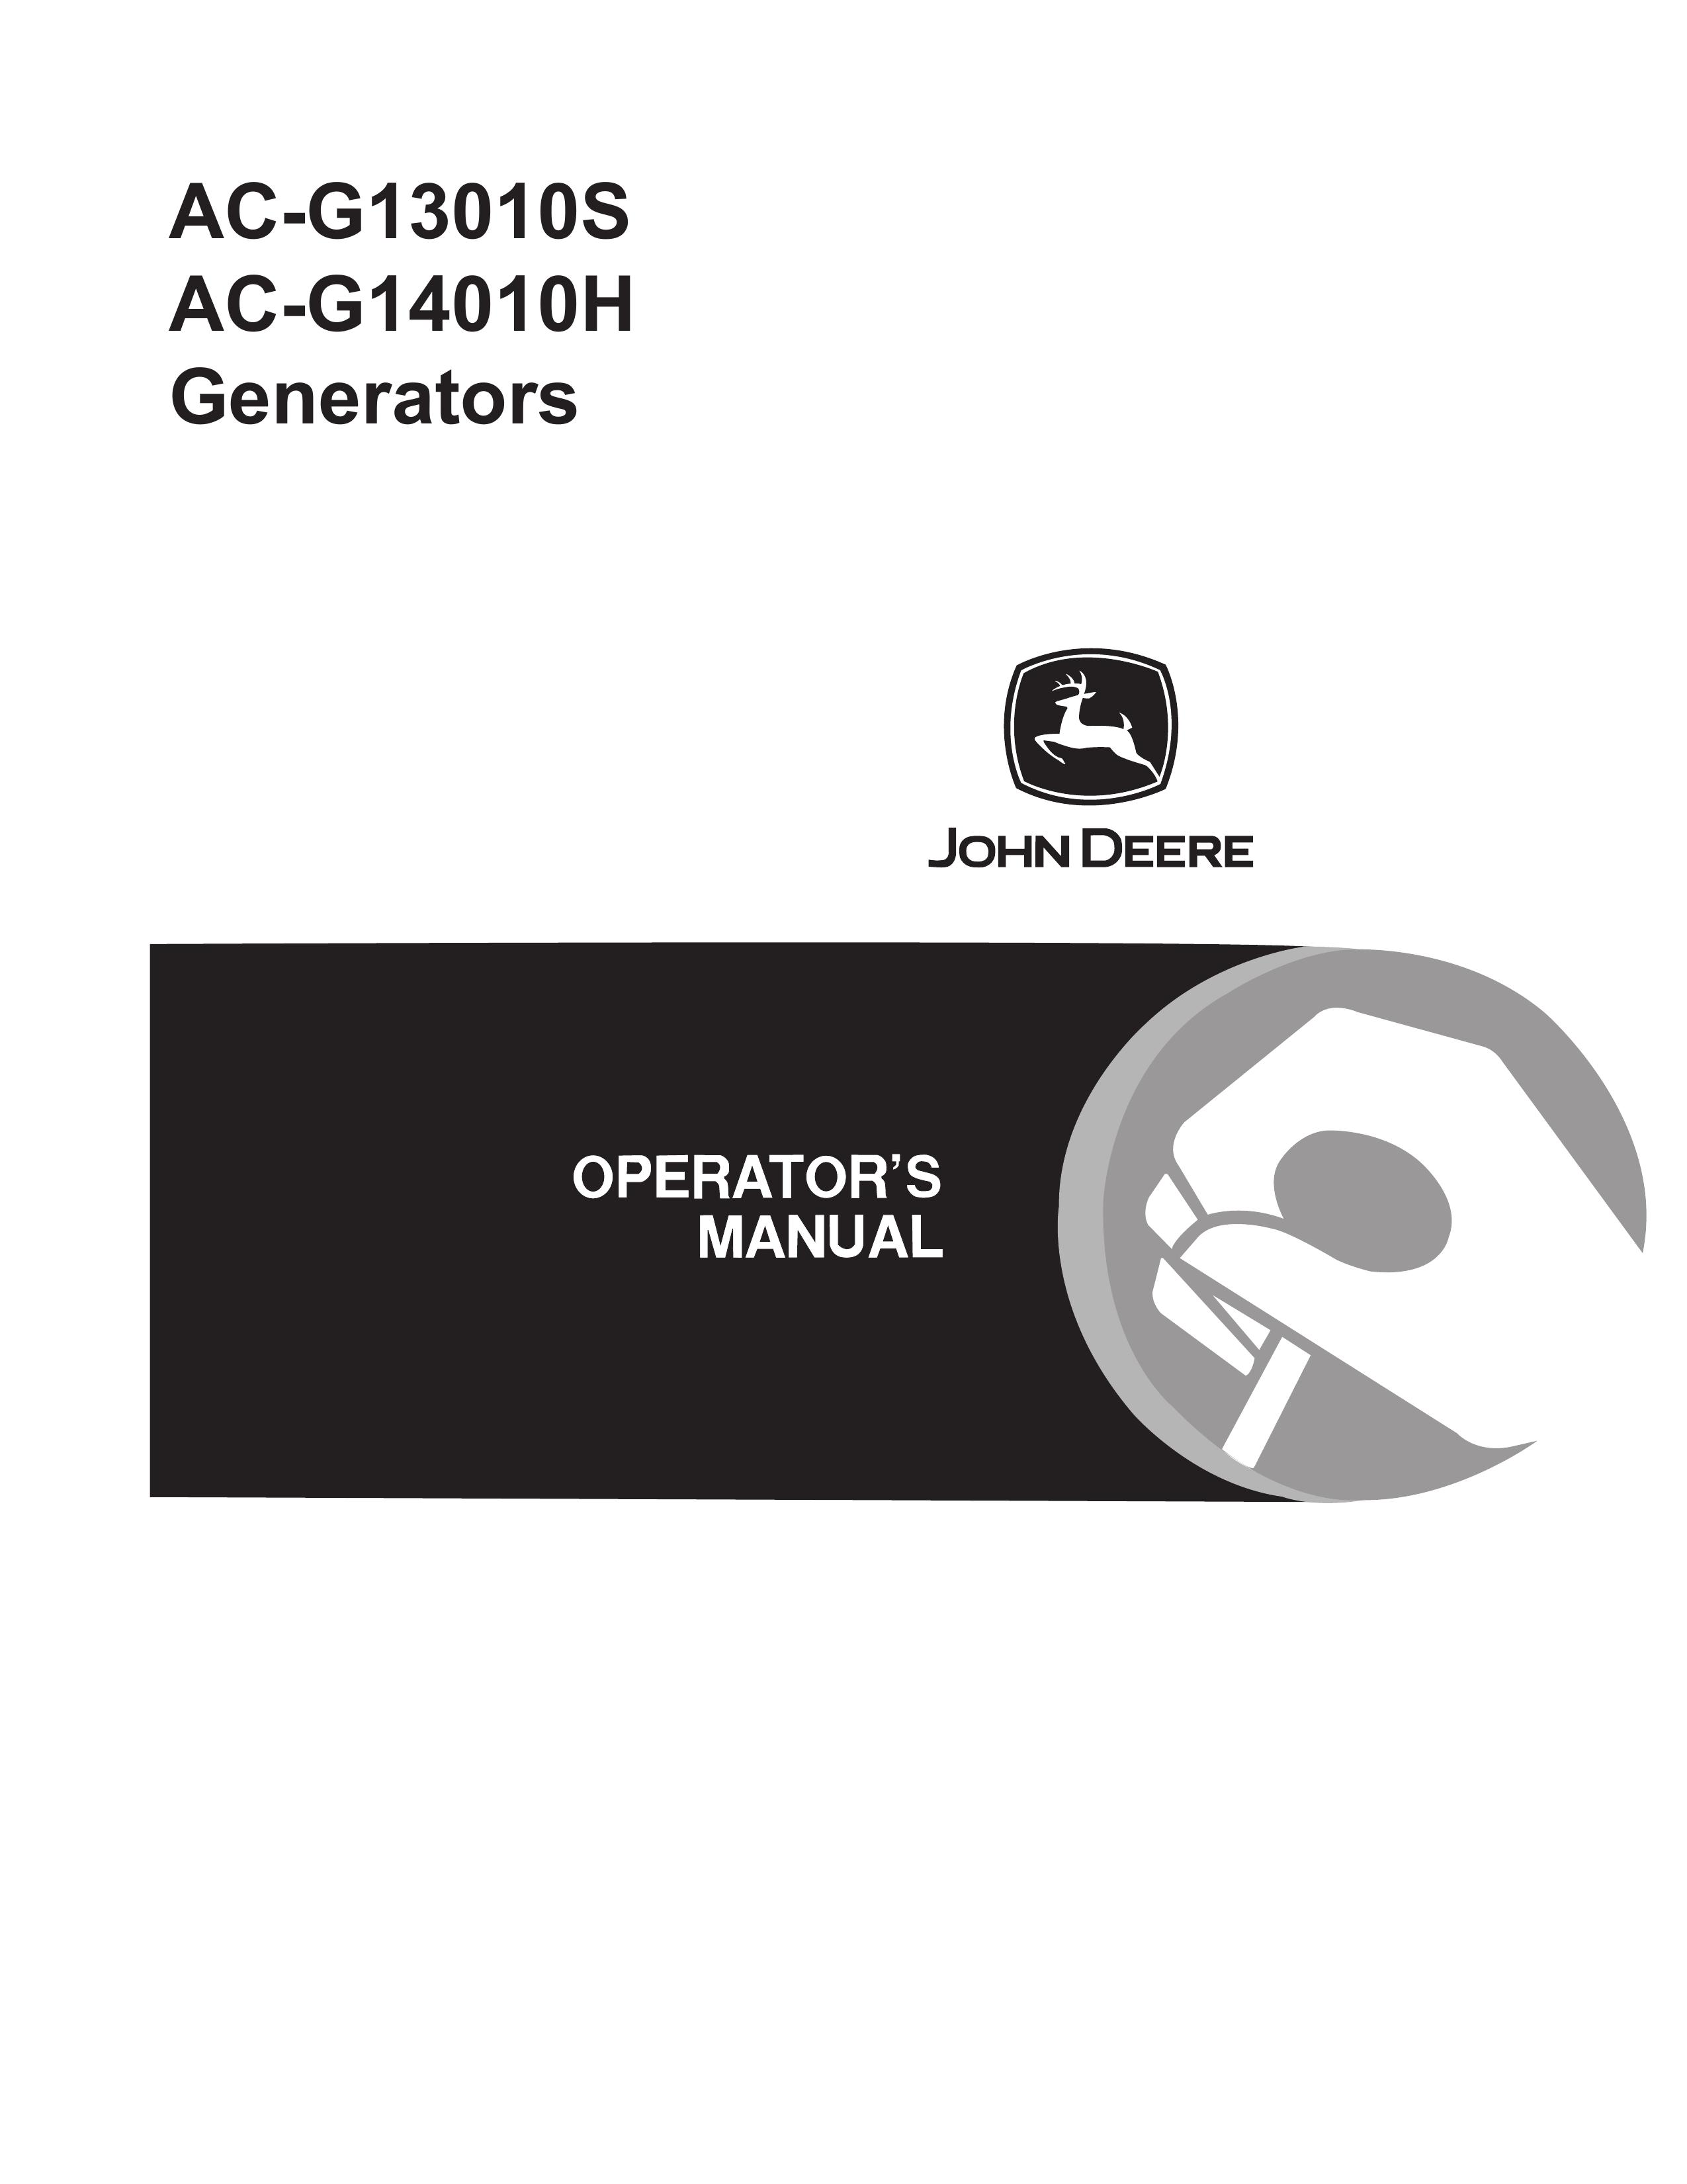 John Deere AC-G13010S Portable Generator User Manual